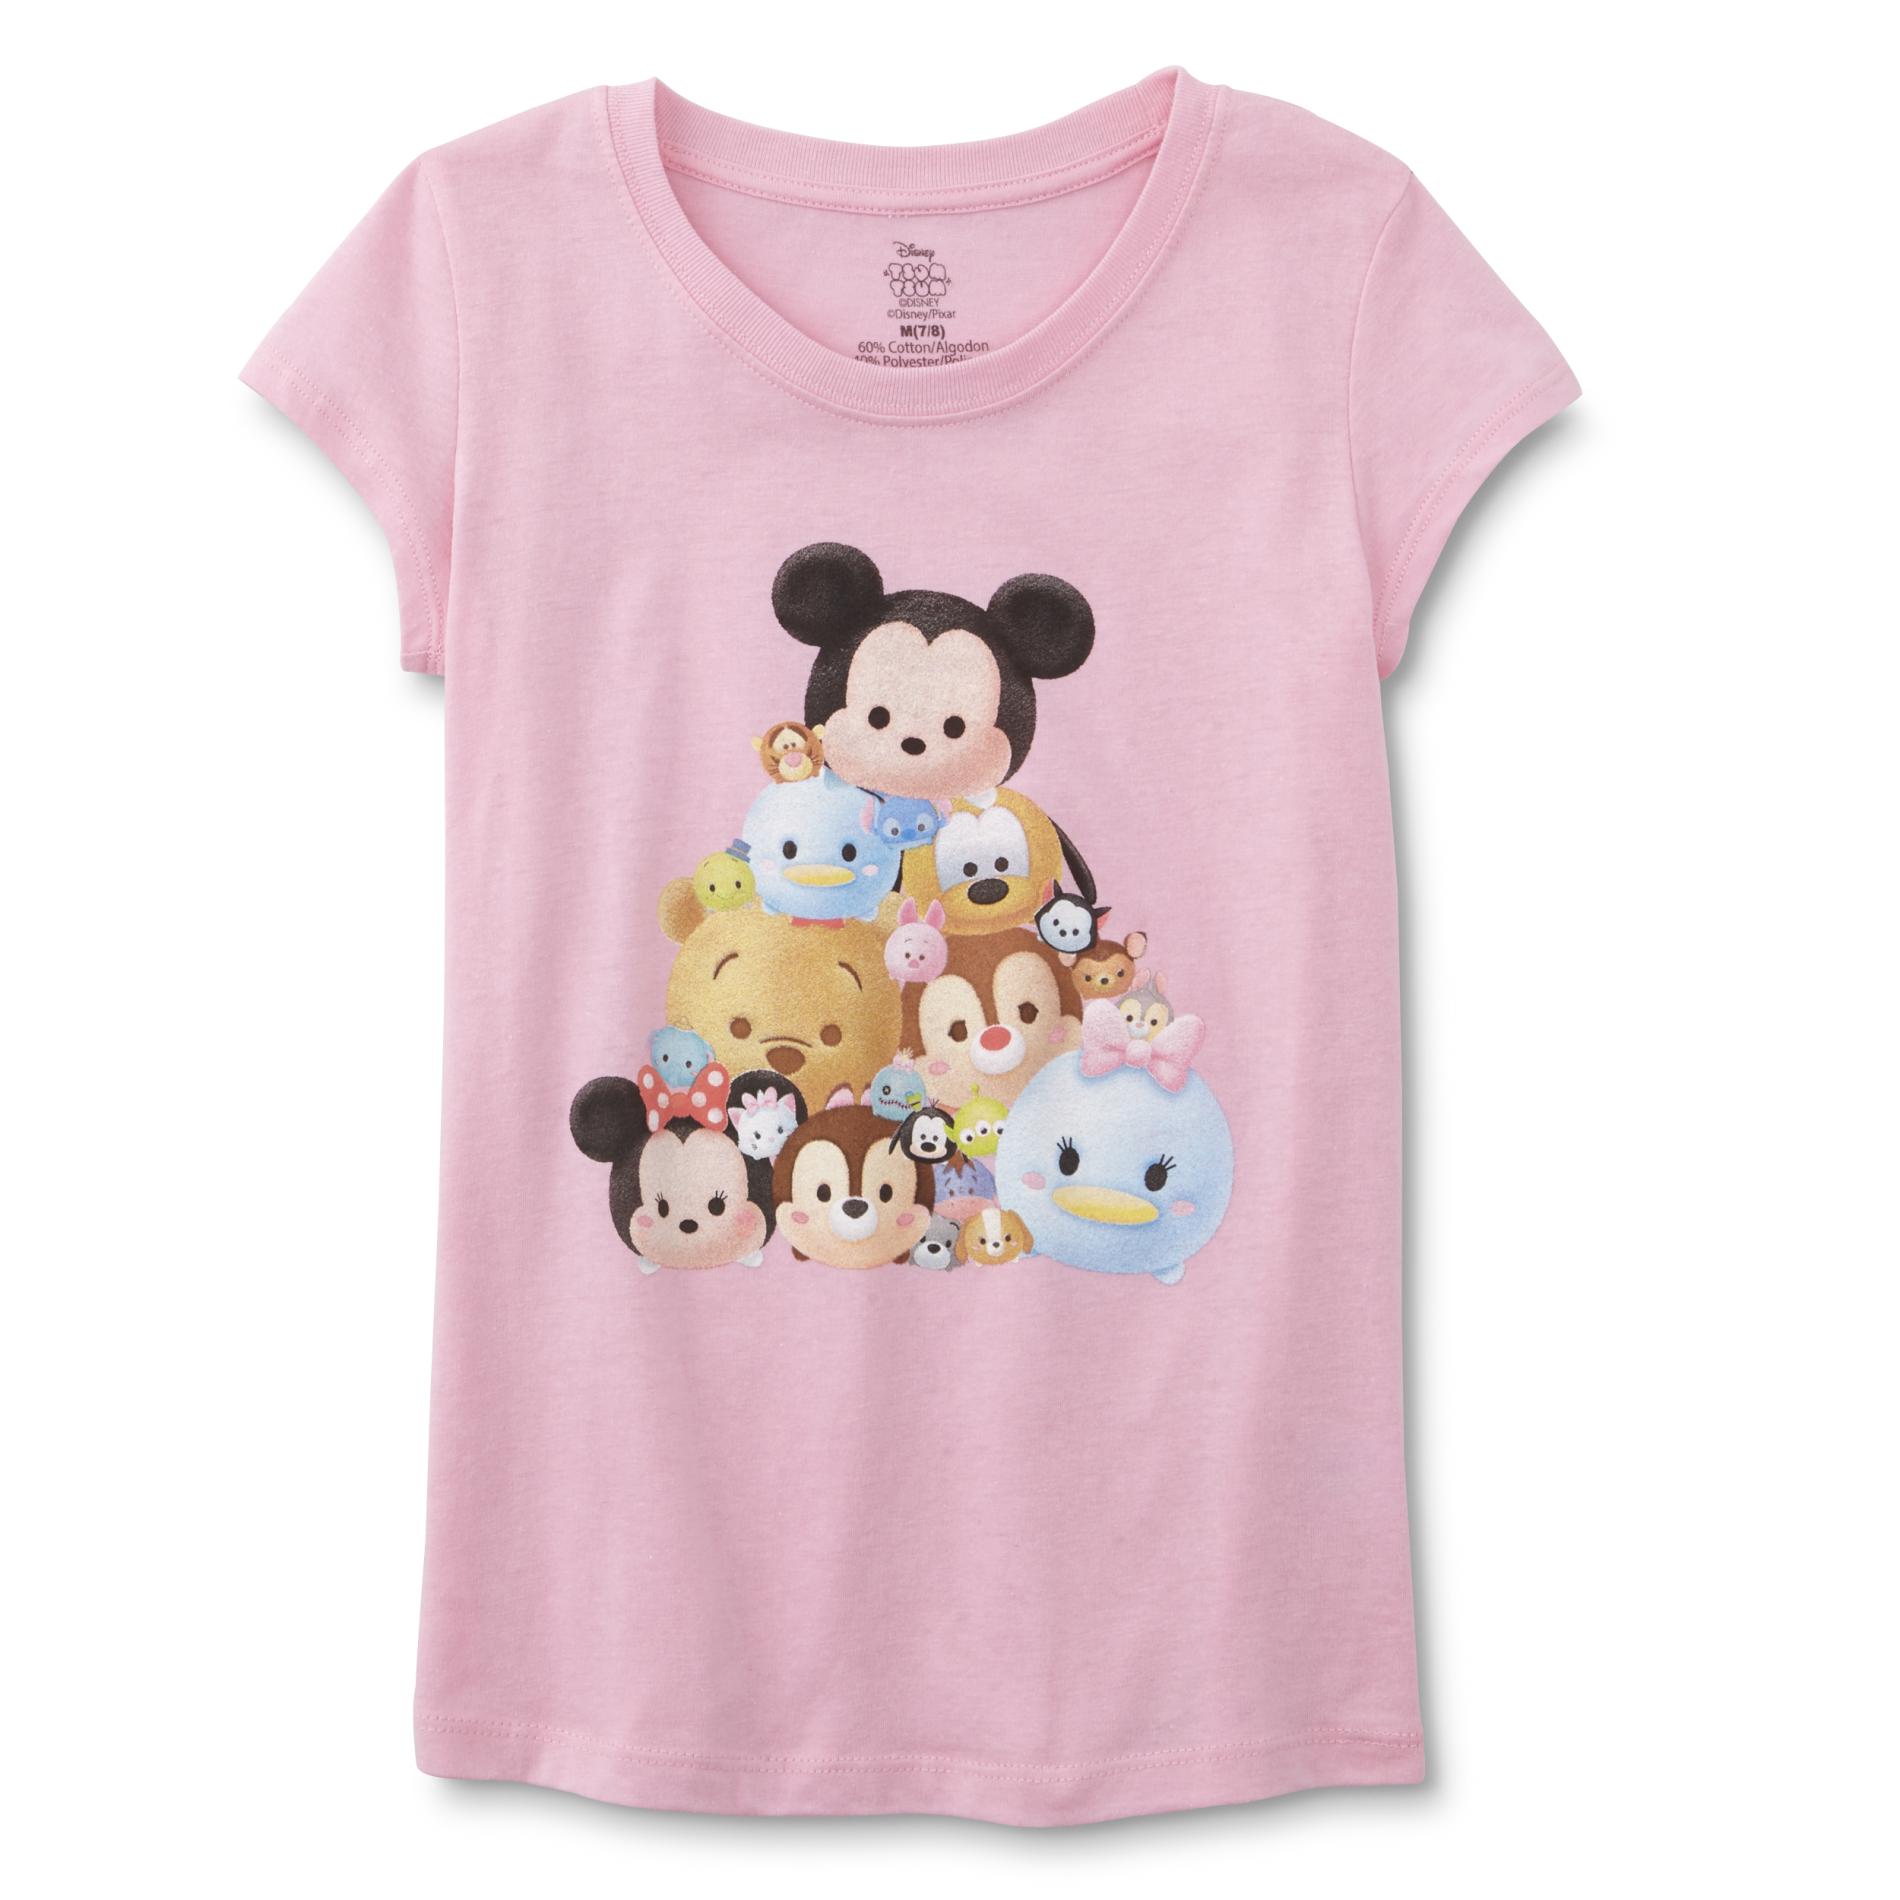 Disney Tsum Tsum Girls' Graphic T-Shirt